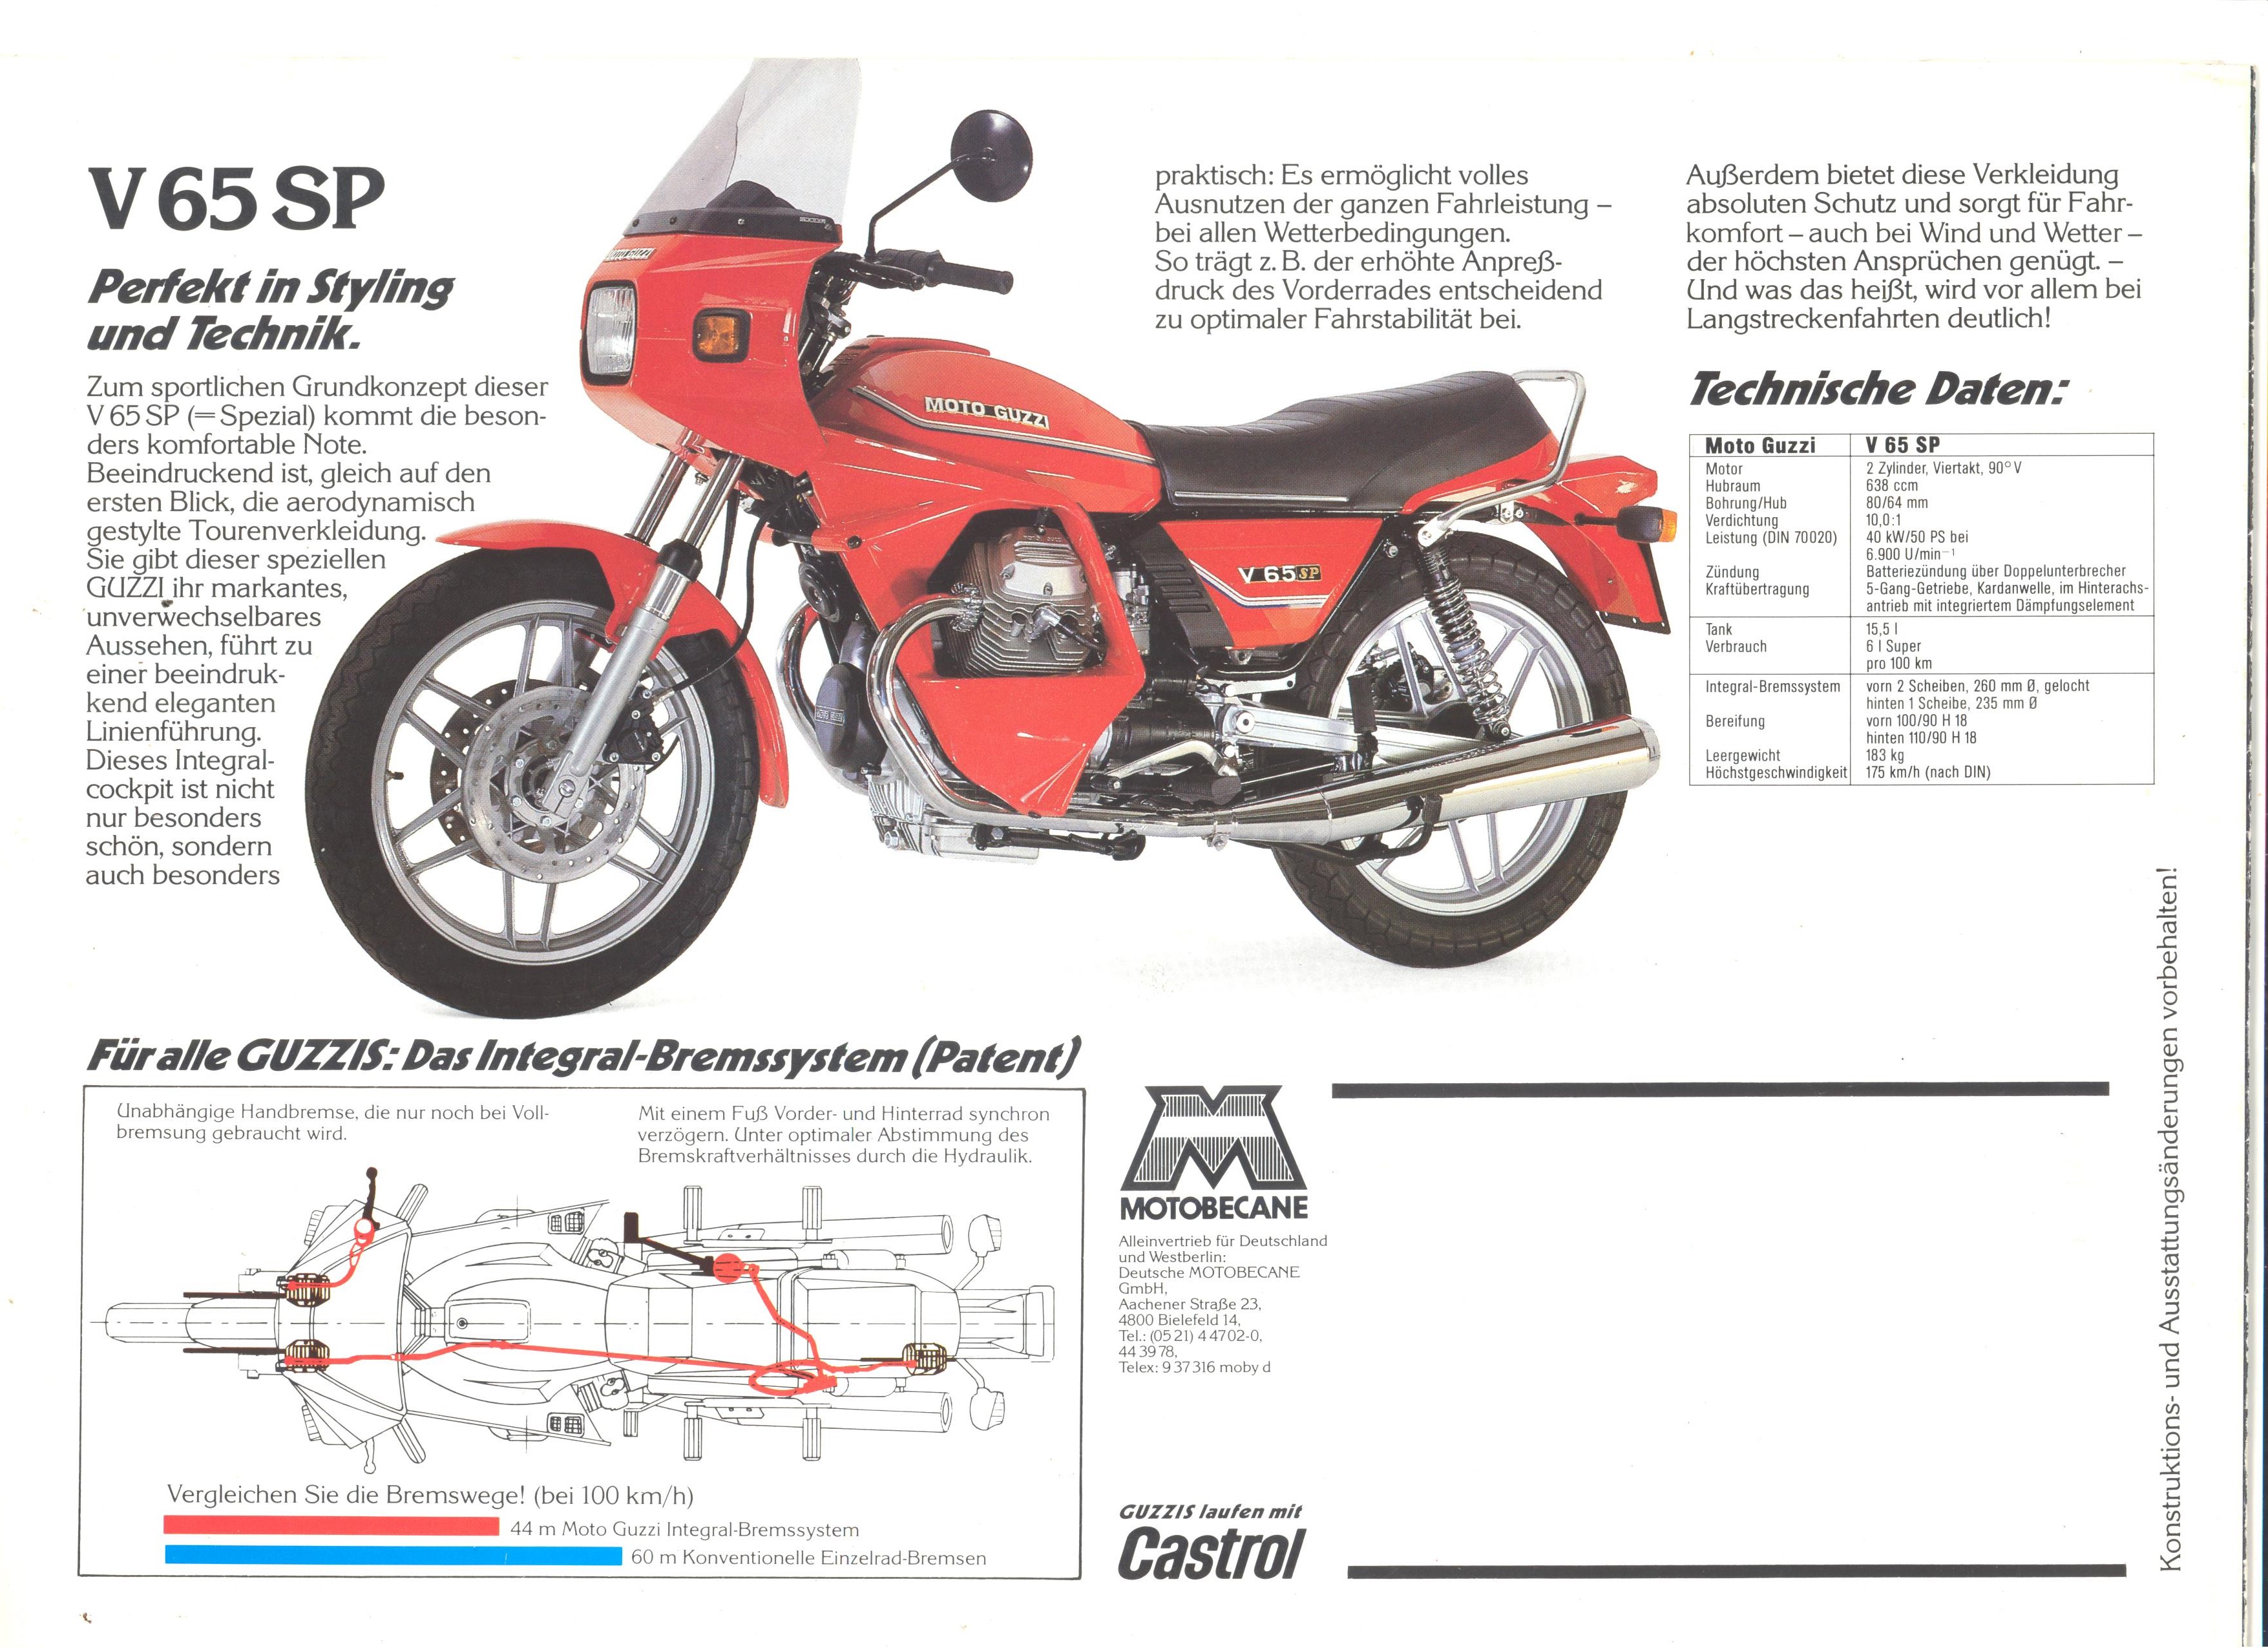 Moto Guzzi factory brochure: V65 - V65 Lario - V65 TT - V65 SP